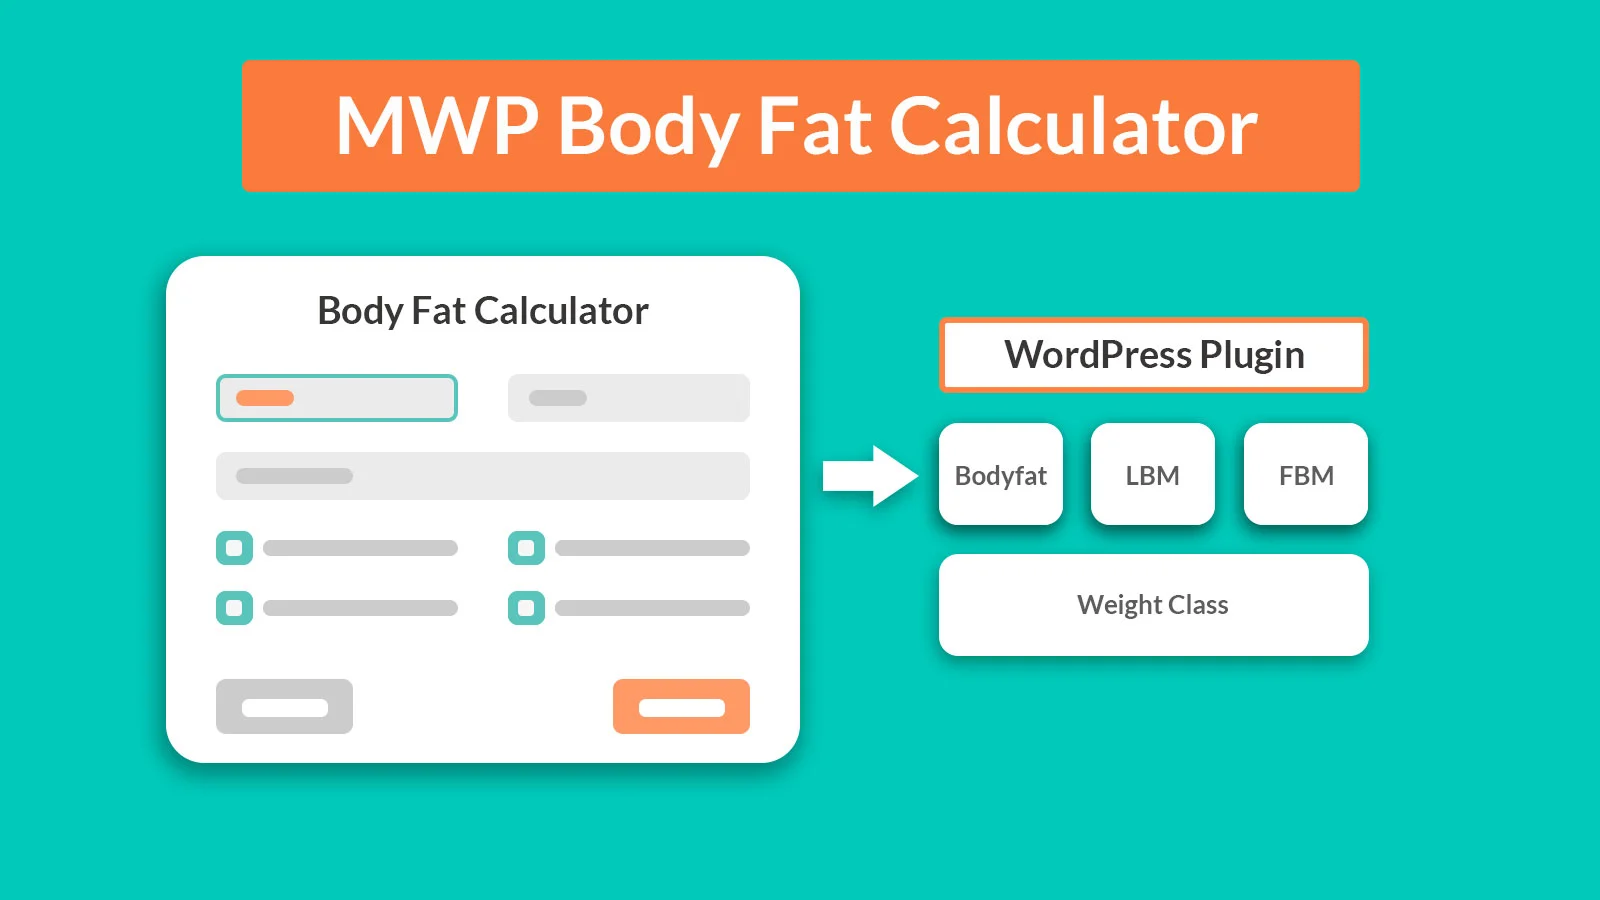 MWP Body Fat Calculator portfolio project